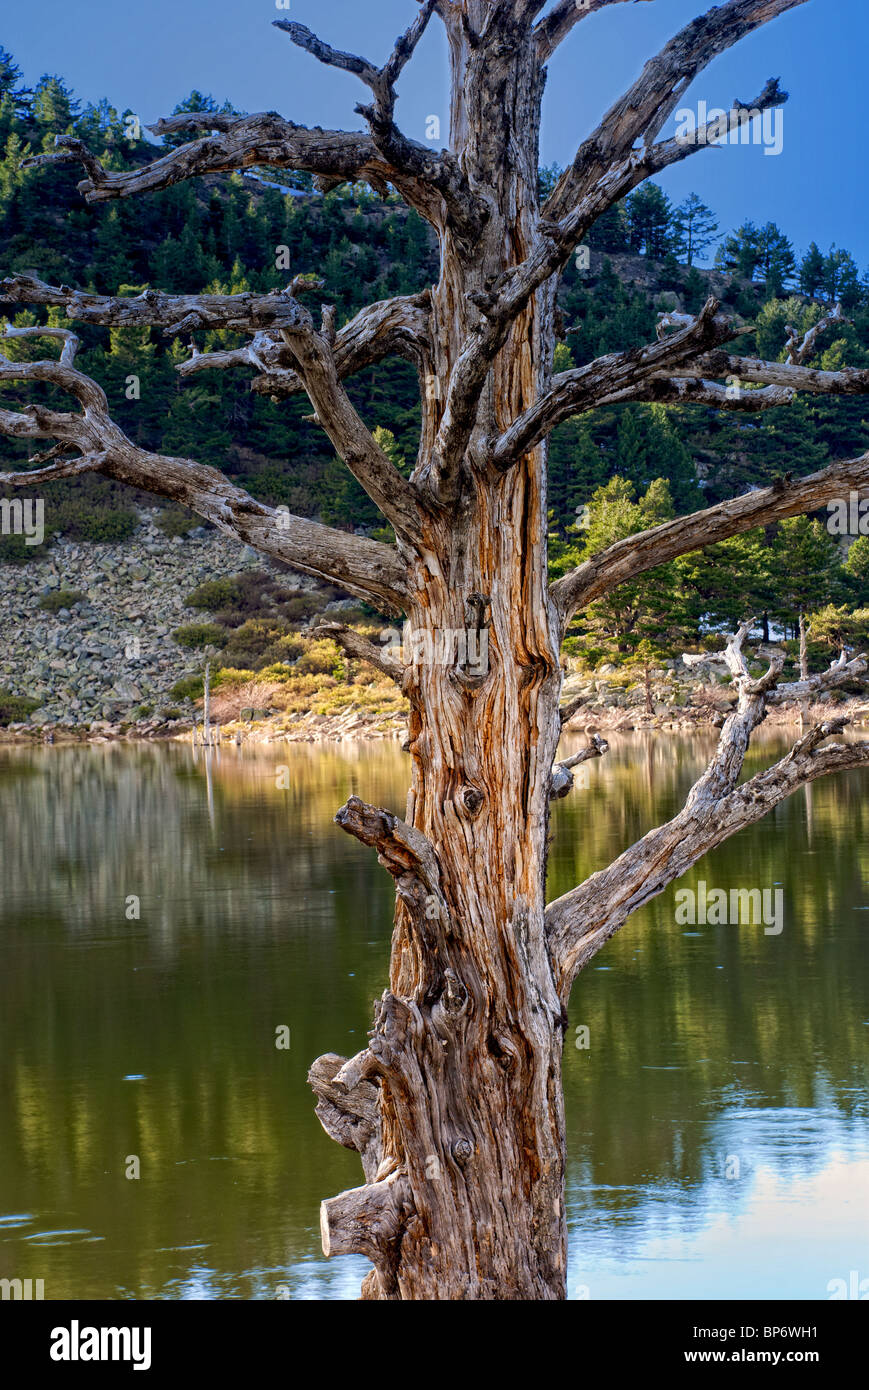 Dead Tree. Laguna de los Patos. Lagunas Glaciares de Neila Natural Park. Burgos province. Castilla y Leon. Spain. Stock Photo